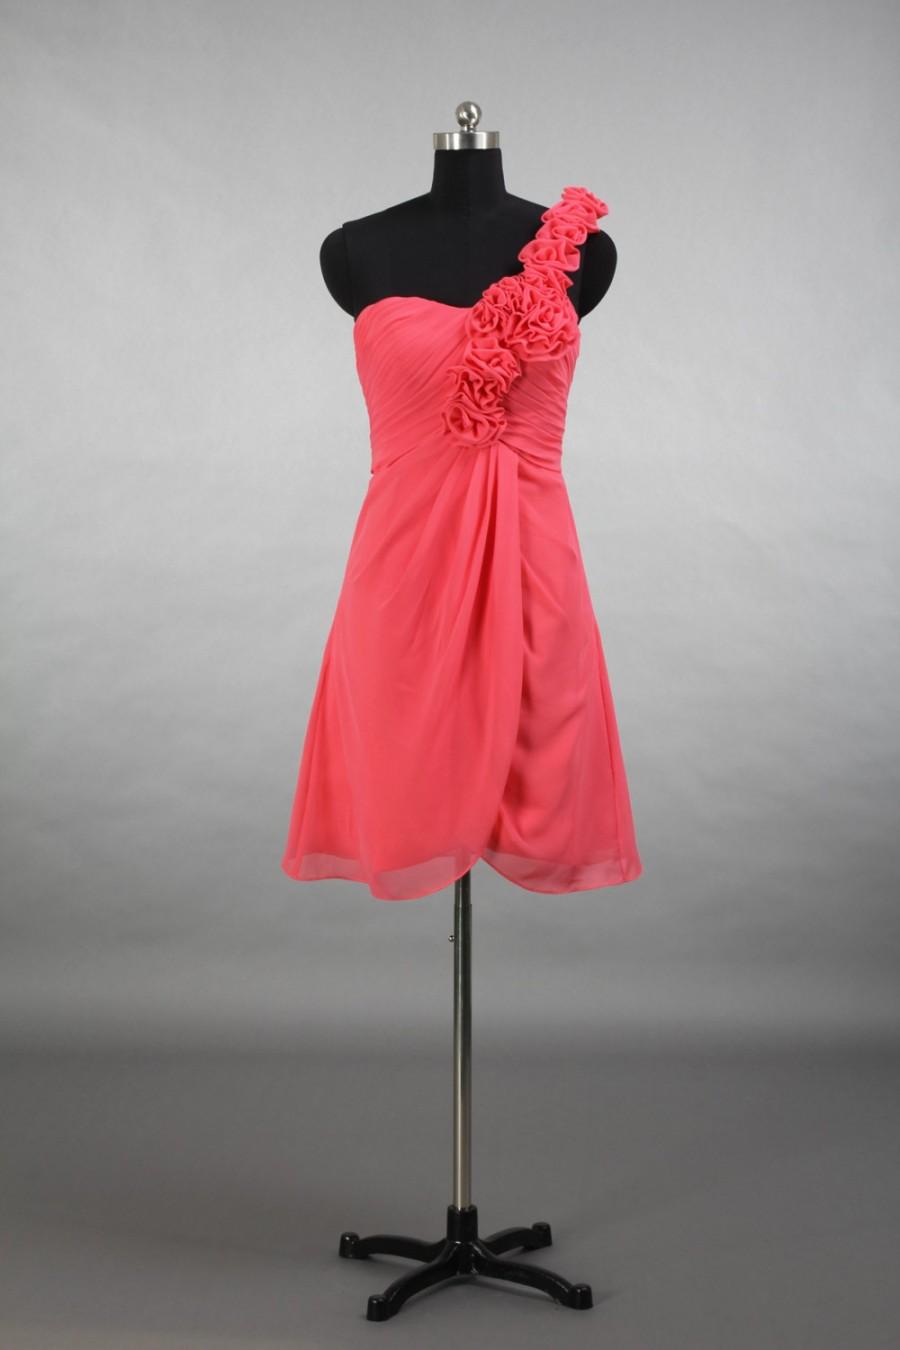 زفاف - One Shoulder Coral Bridesmaid Dress, A-line Short Chiffon Bridesmaid Dress With Shoulder Flowers